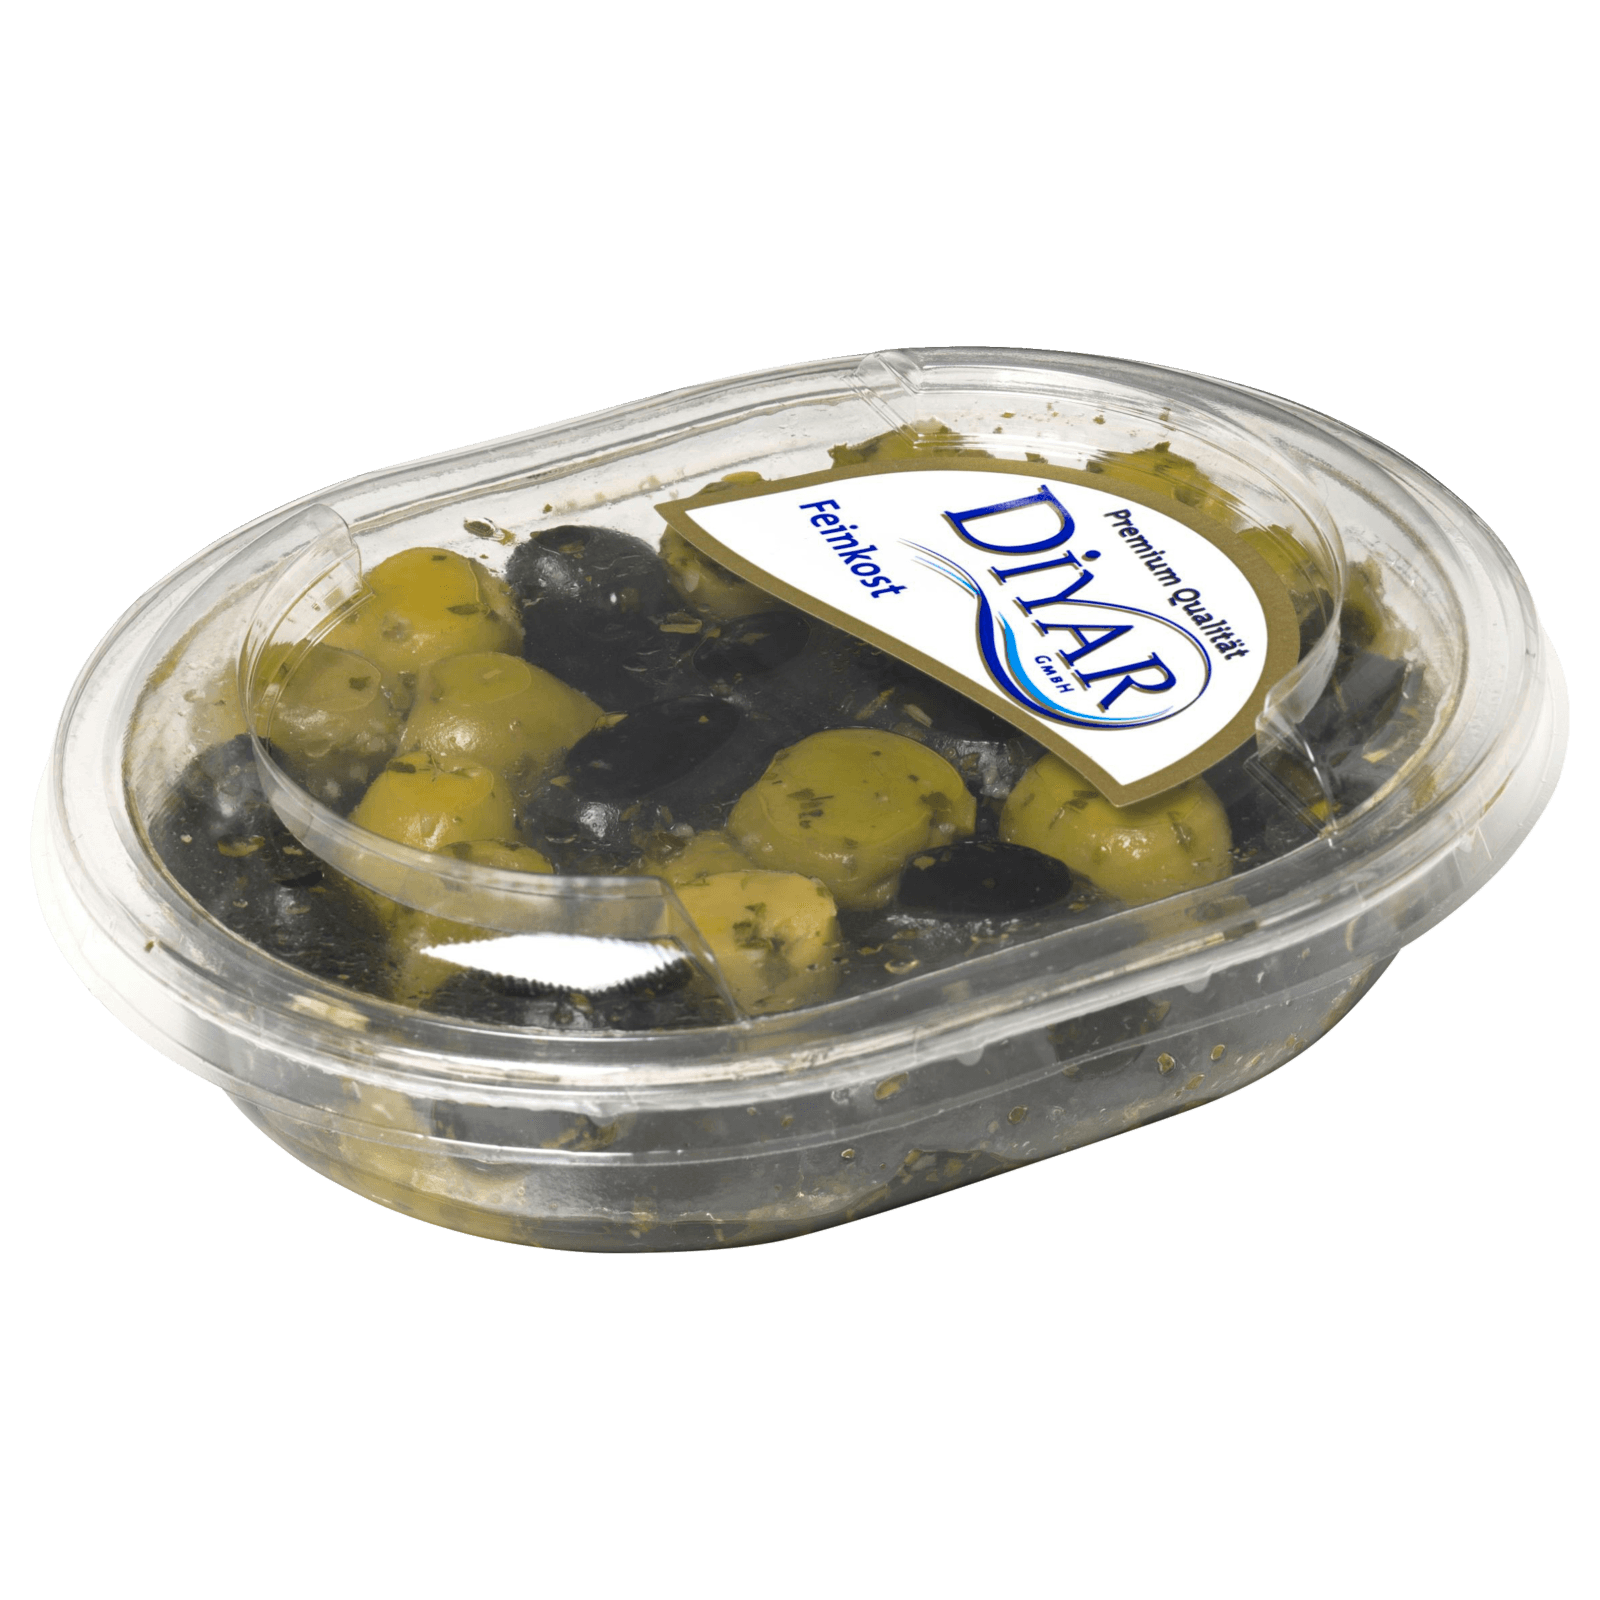 Diyar Oliven Schwarz mit Kräutern 150g  für 2.59 EUR